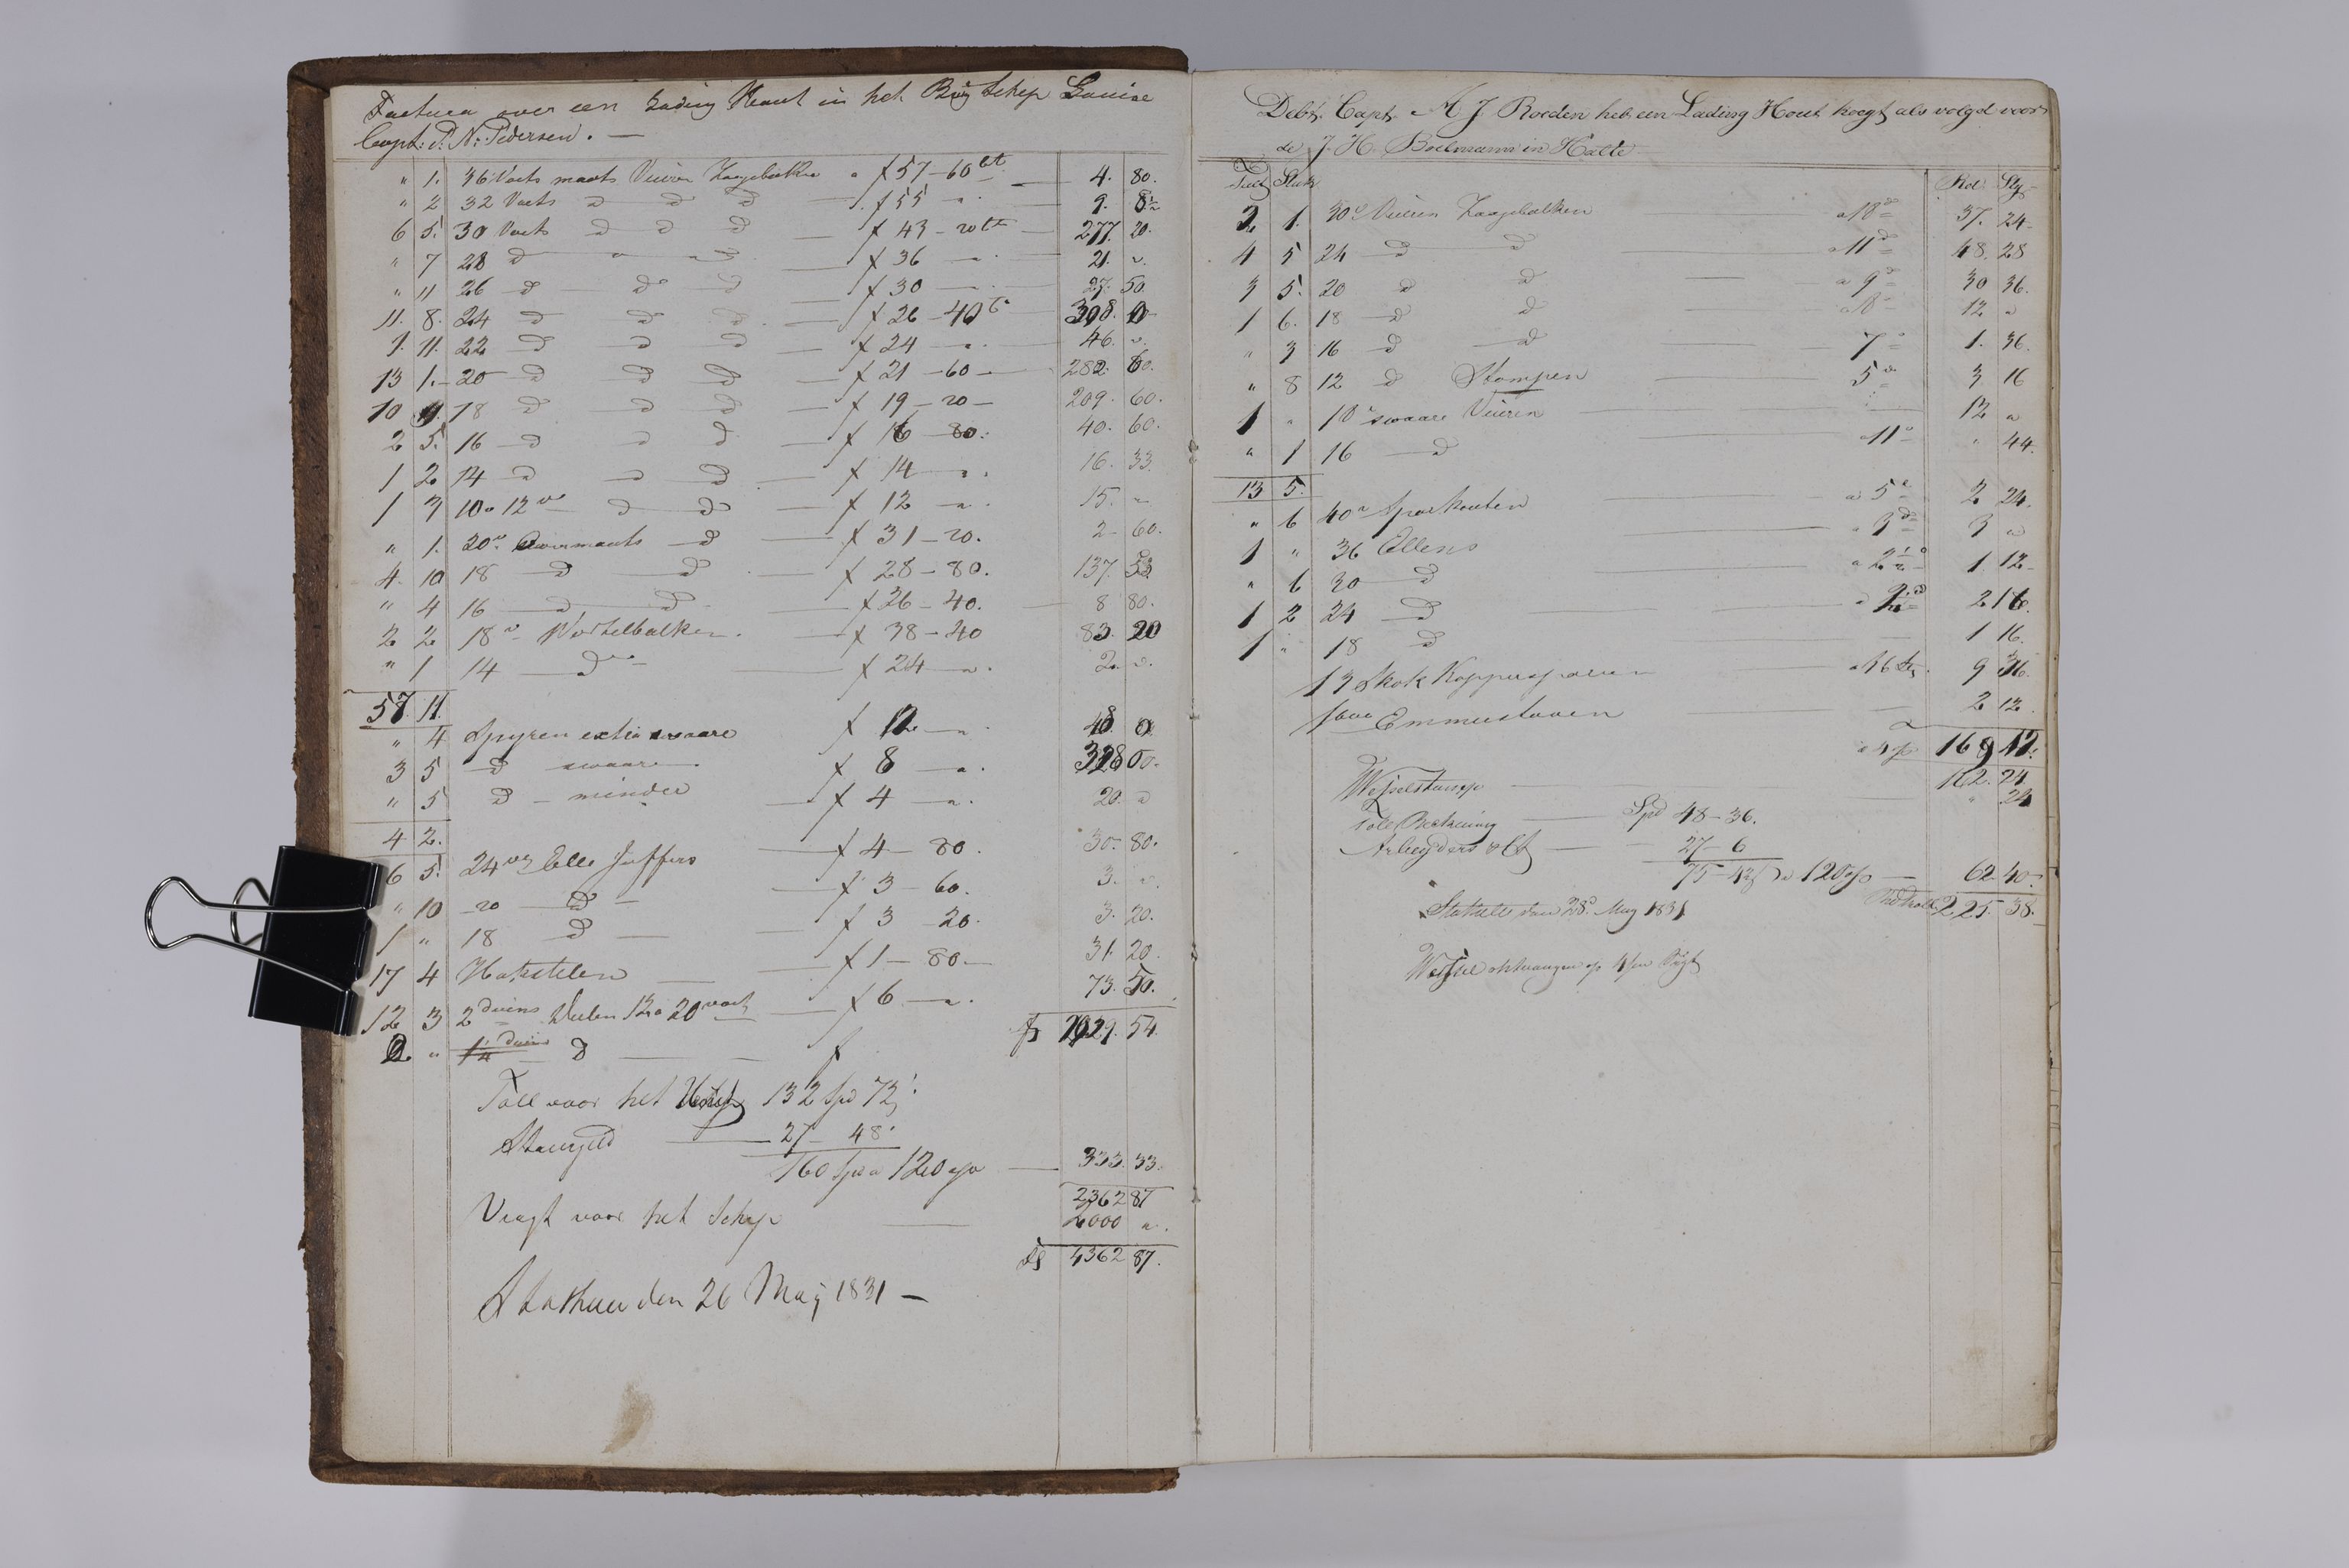 , Priscourant-tømmerpriser, 1834-38, 1834-1838, s. 4